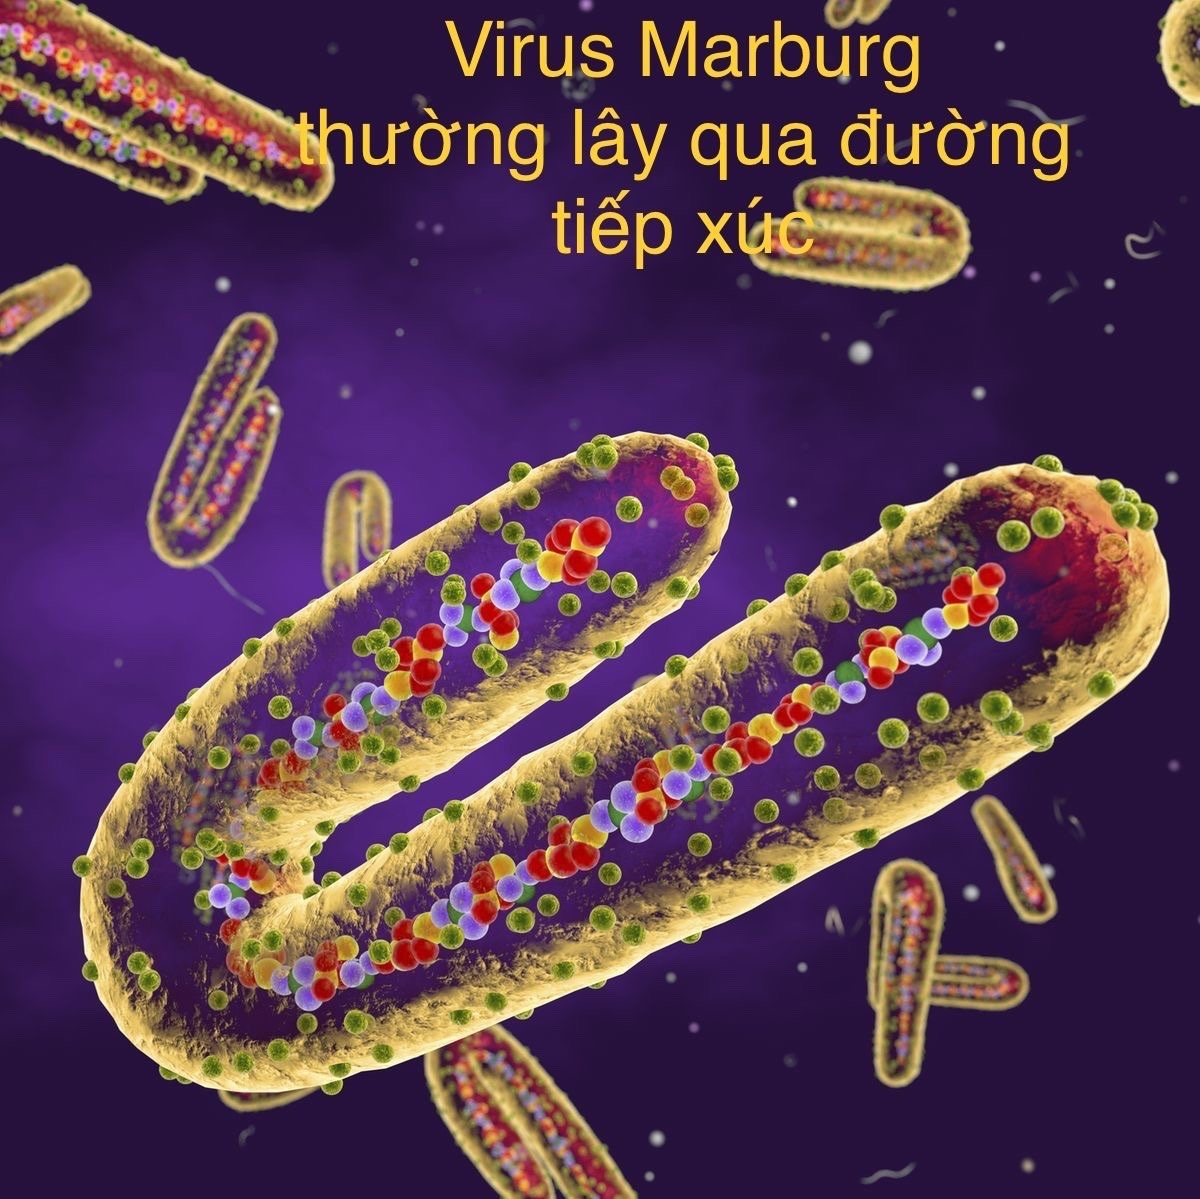 Bệnh do virus Marburg có tỉ lệ tử vong cao, chuyên gia chỉ cách ...